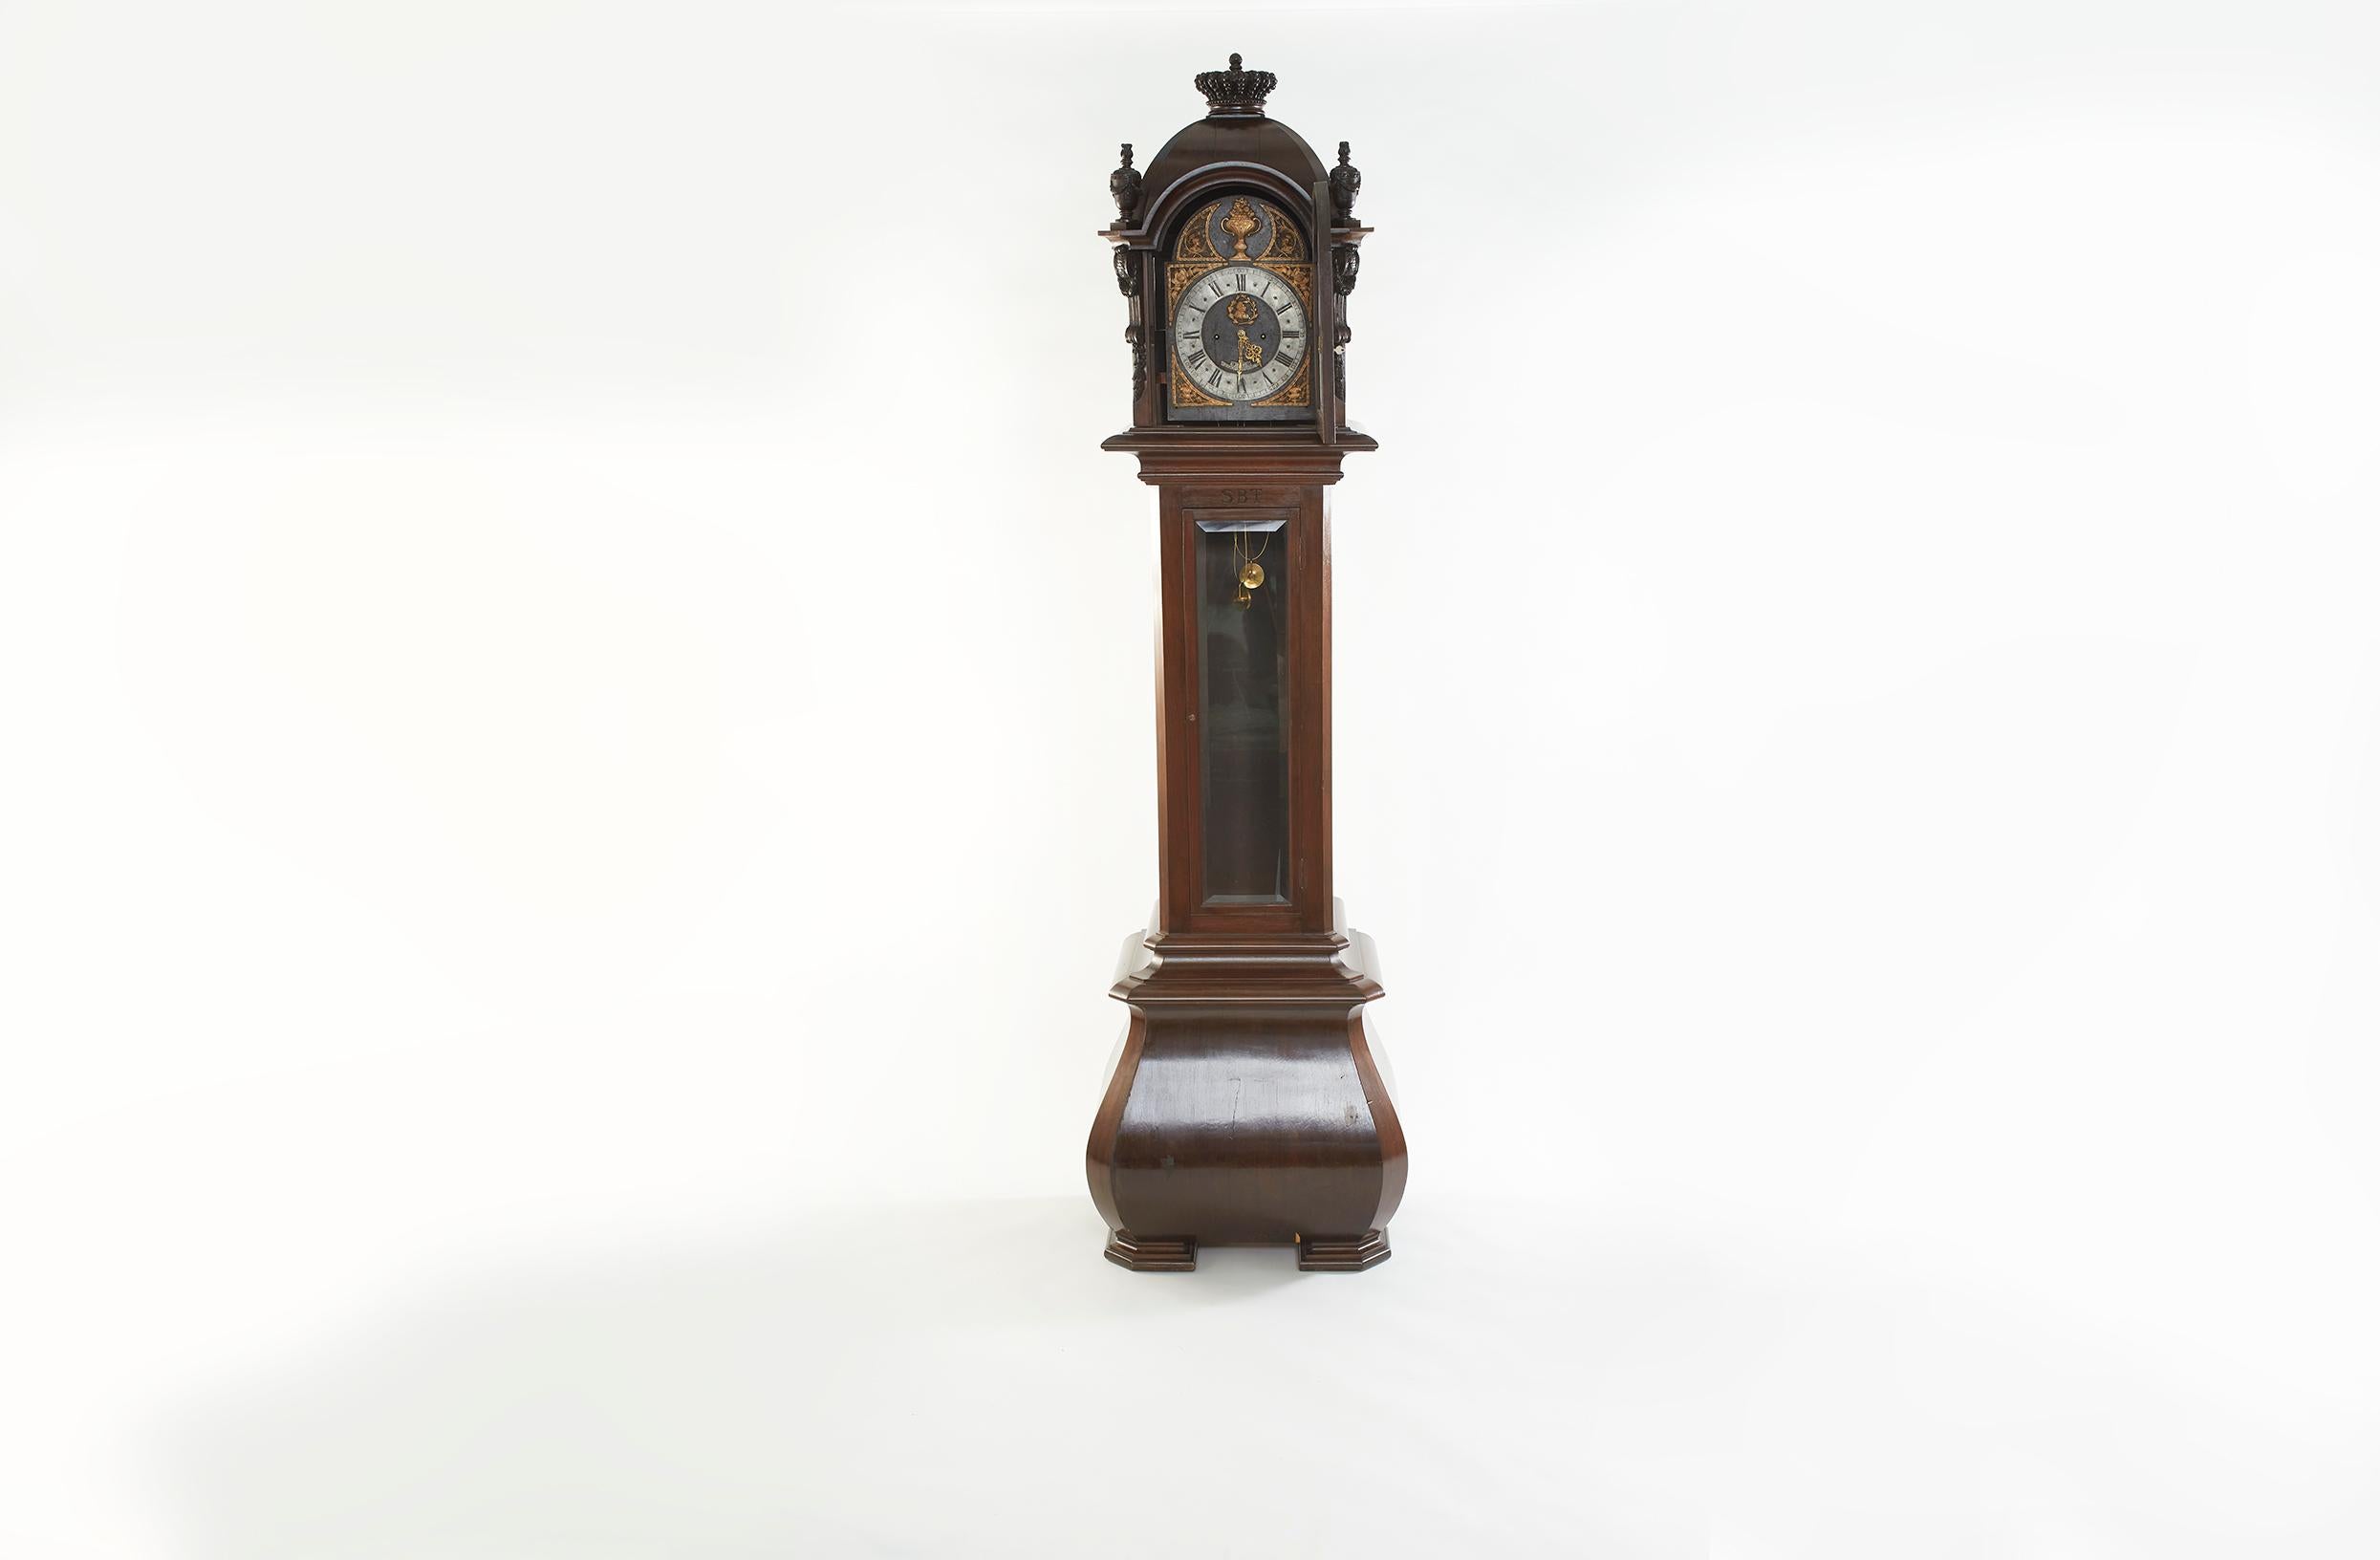 Horloge grand-père allemande à 8 jours du milieu du 18e siècle, avec cadre en bois de noyer. L'horloge à grande caisse présente un boîtier en noyer foncé avec une base évasée, une hotte avec des demi-colonnes et des épis de faîtage tournés. Cadran